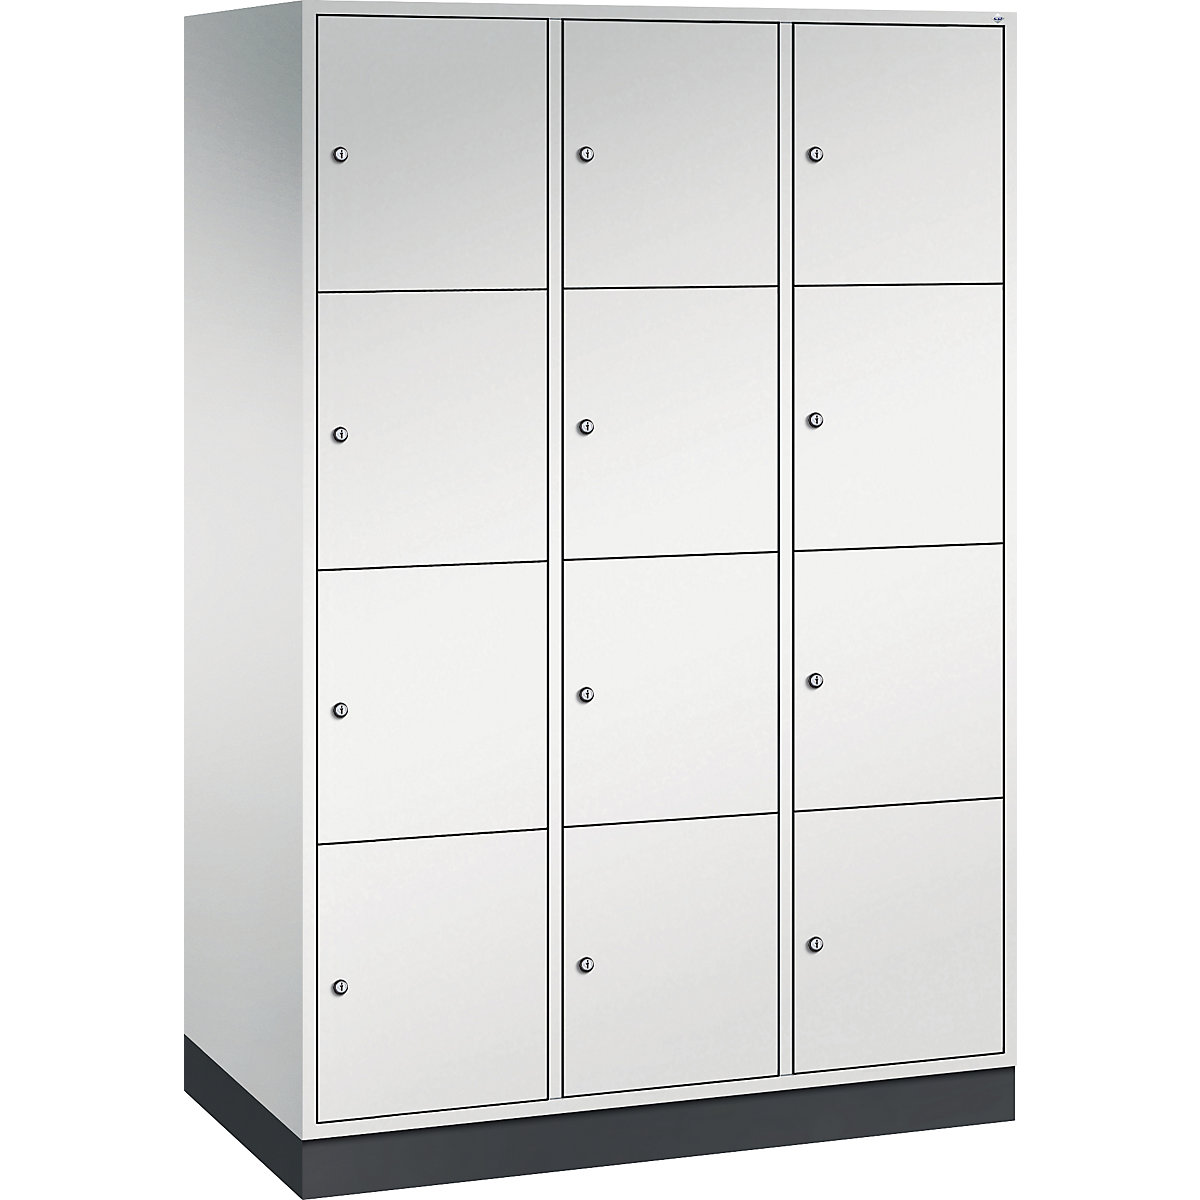 Vestiaire multicases en acier INTRO, casiers hauteur 435 mm – C+P, l x p 1220 x 600 mm, 12 casiers, corps gris clair, portes gris clair-12